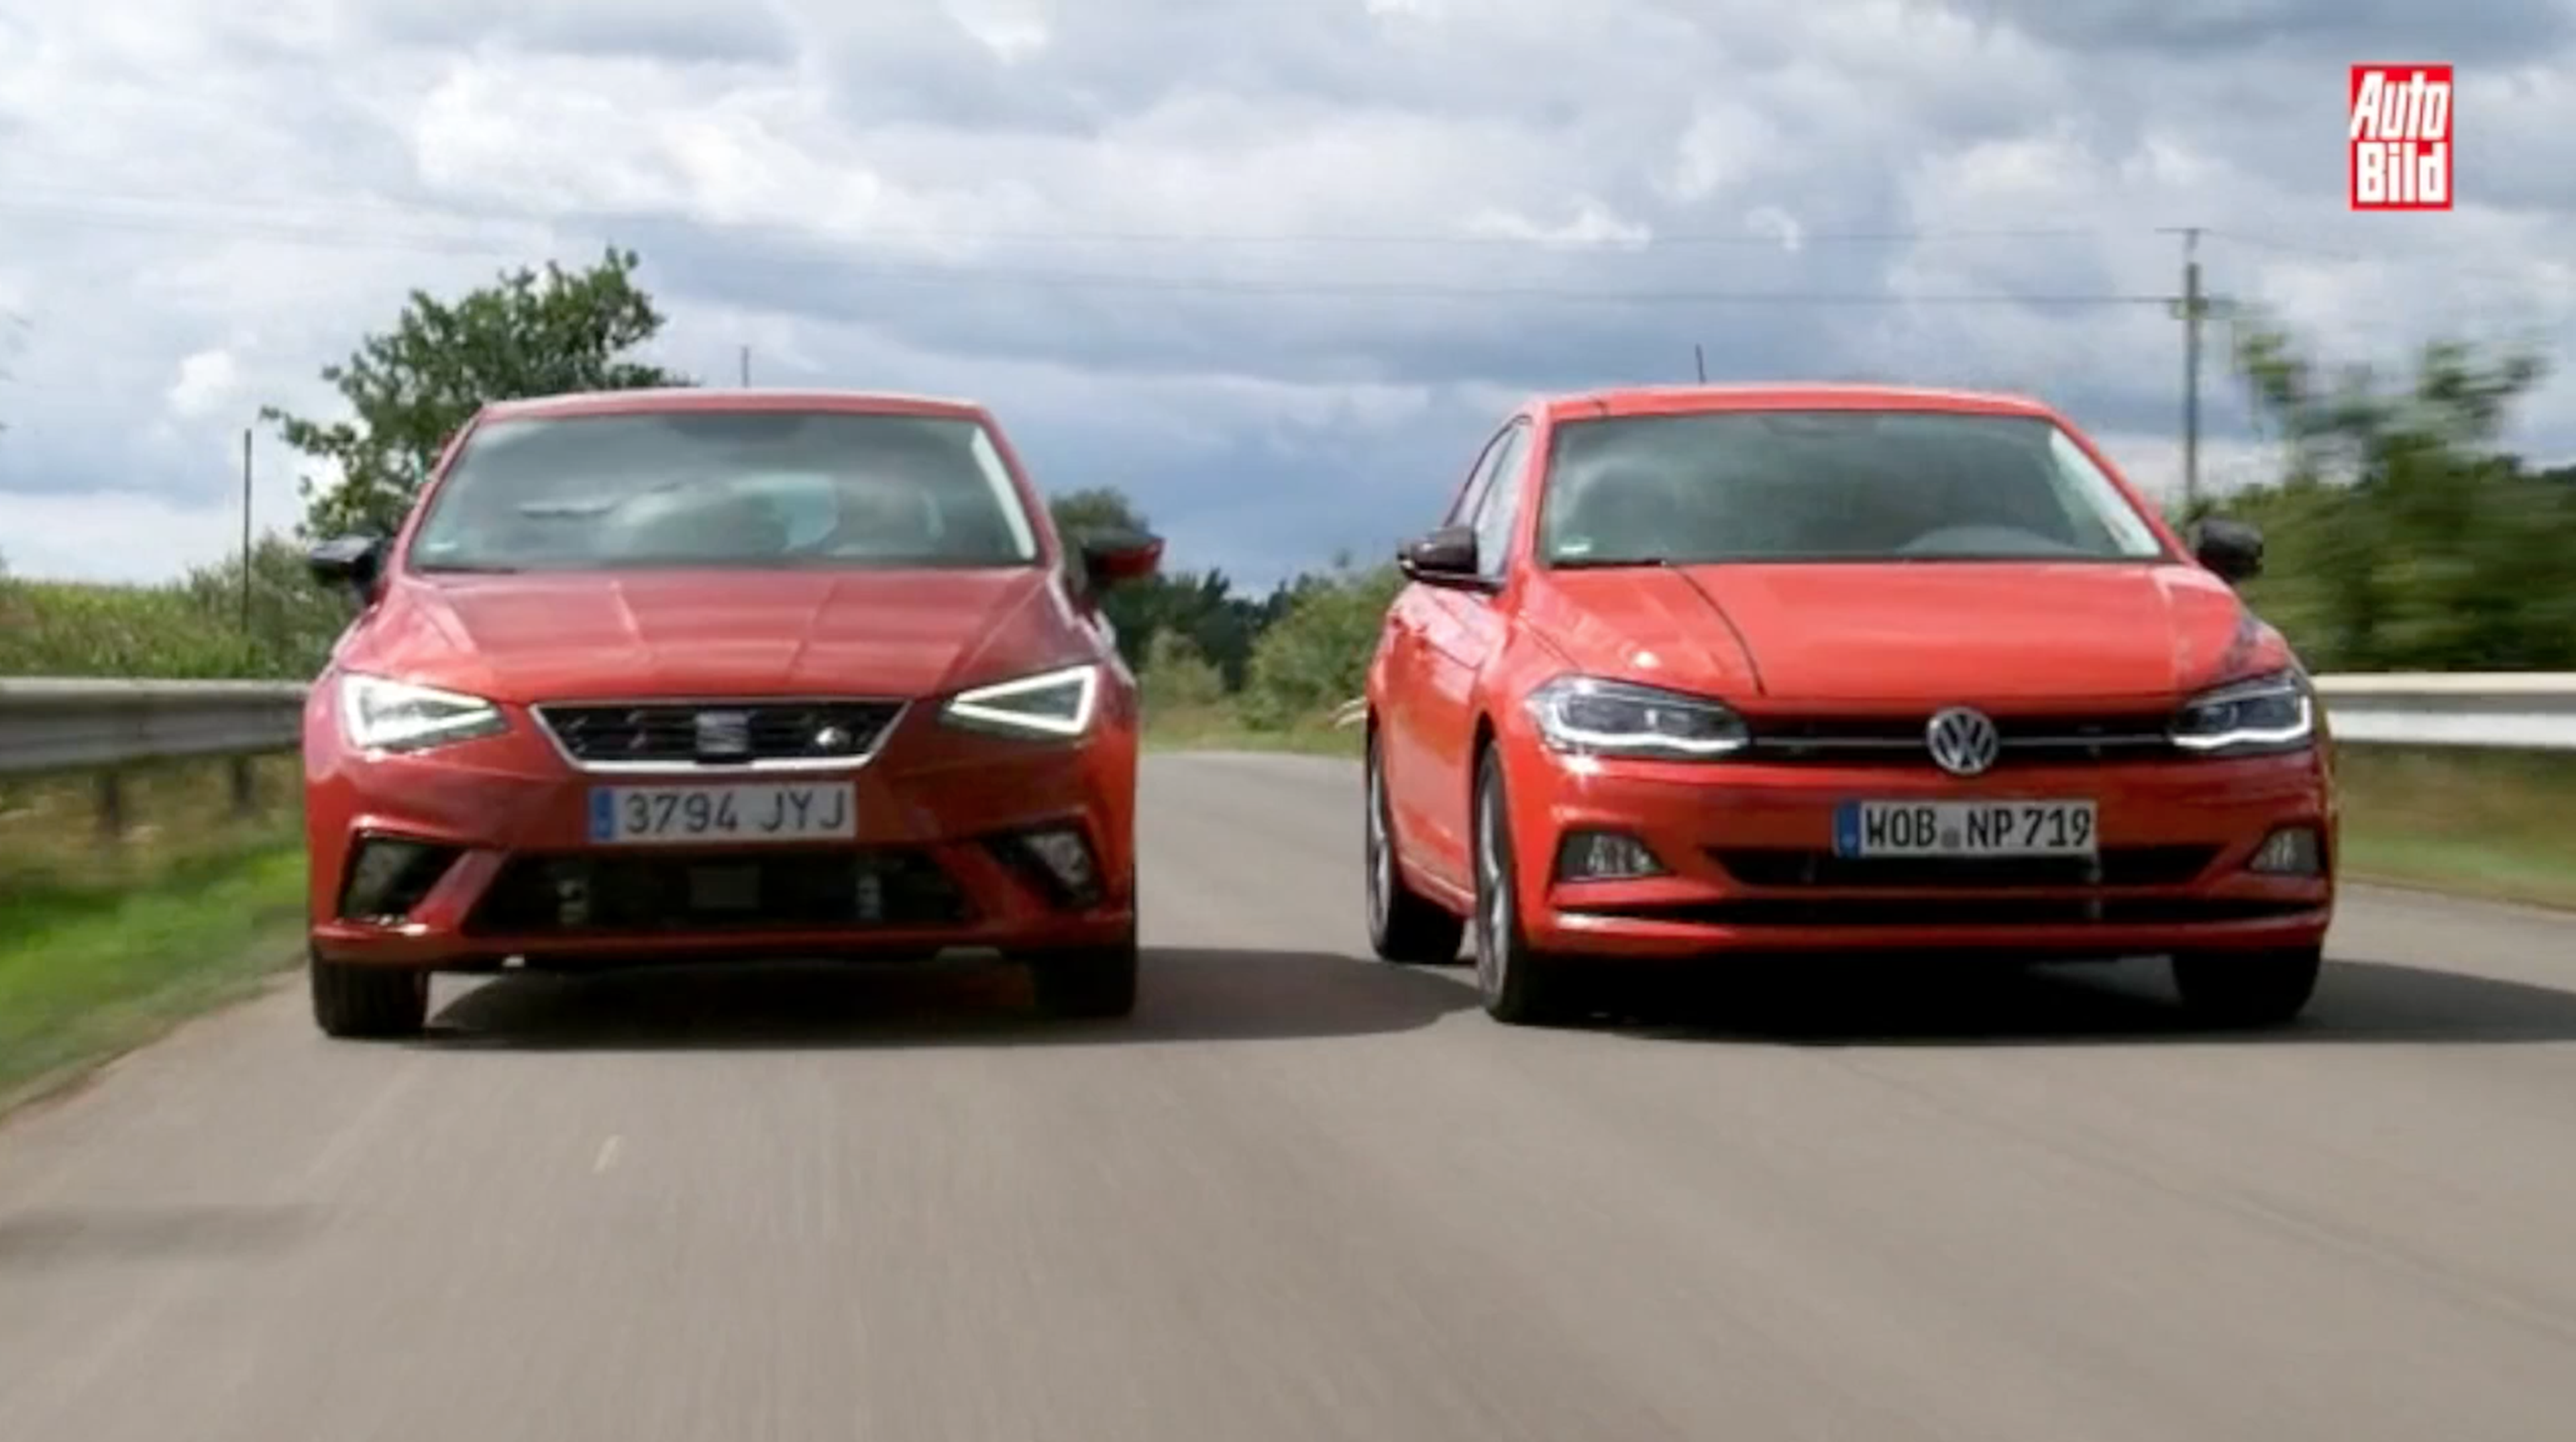 Vídeo: Super Comparativa, Volkswagen Polo 2017 vs Seat Ibiza 2017